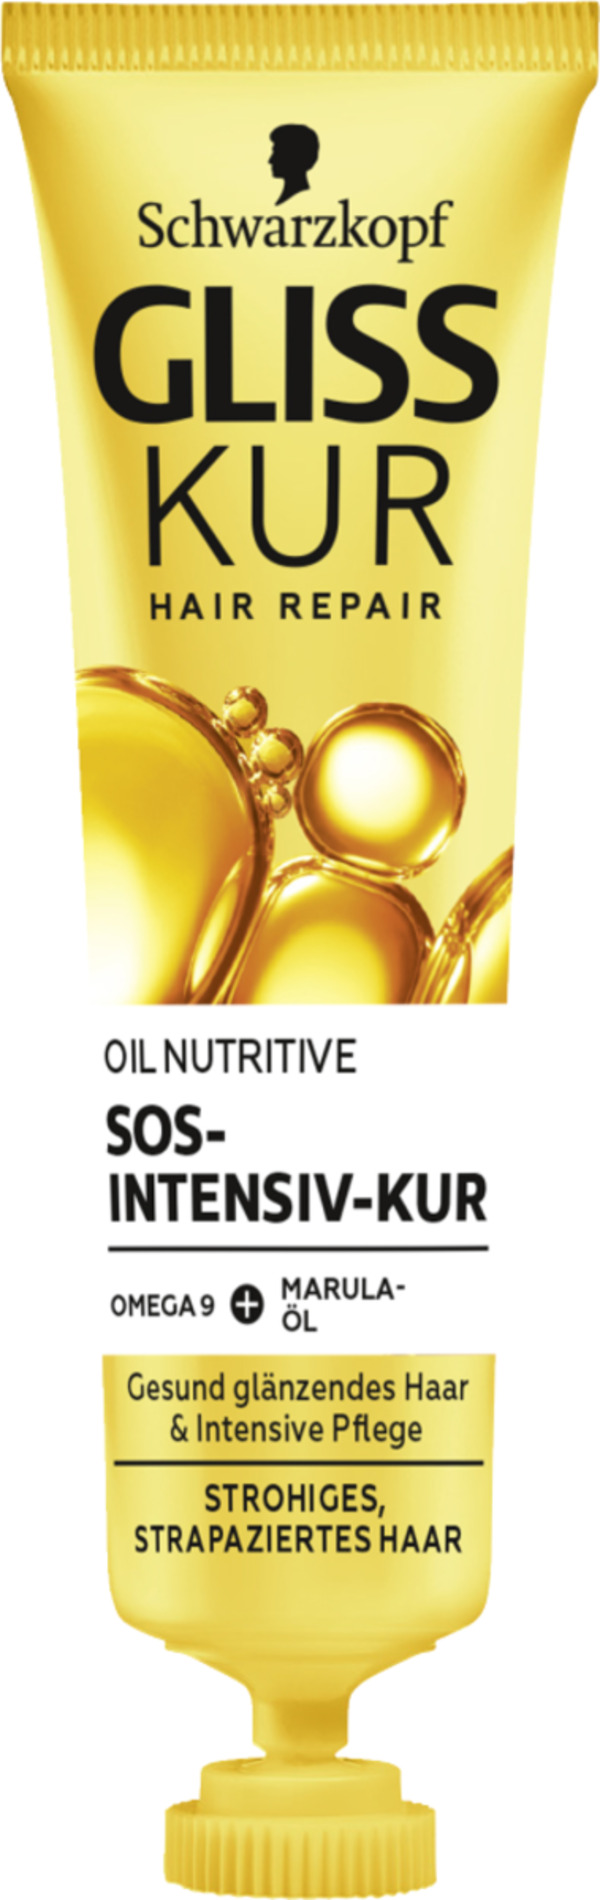 Bild 1 von Schwarzkopf Gliss Kur Oil Nutritive SOS-Intensive-Kur